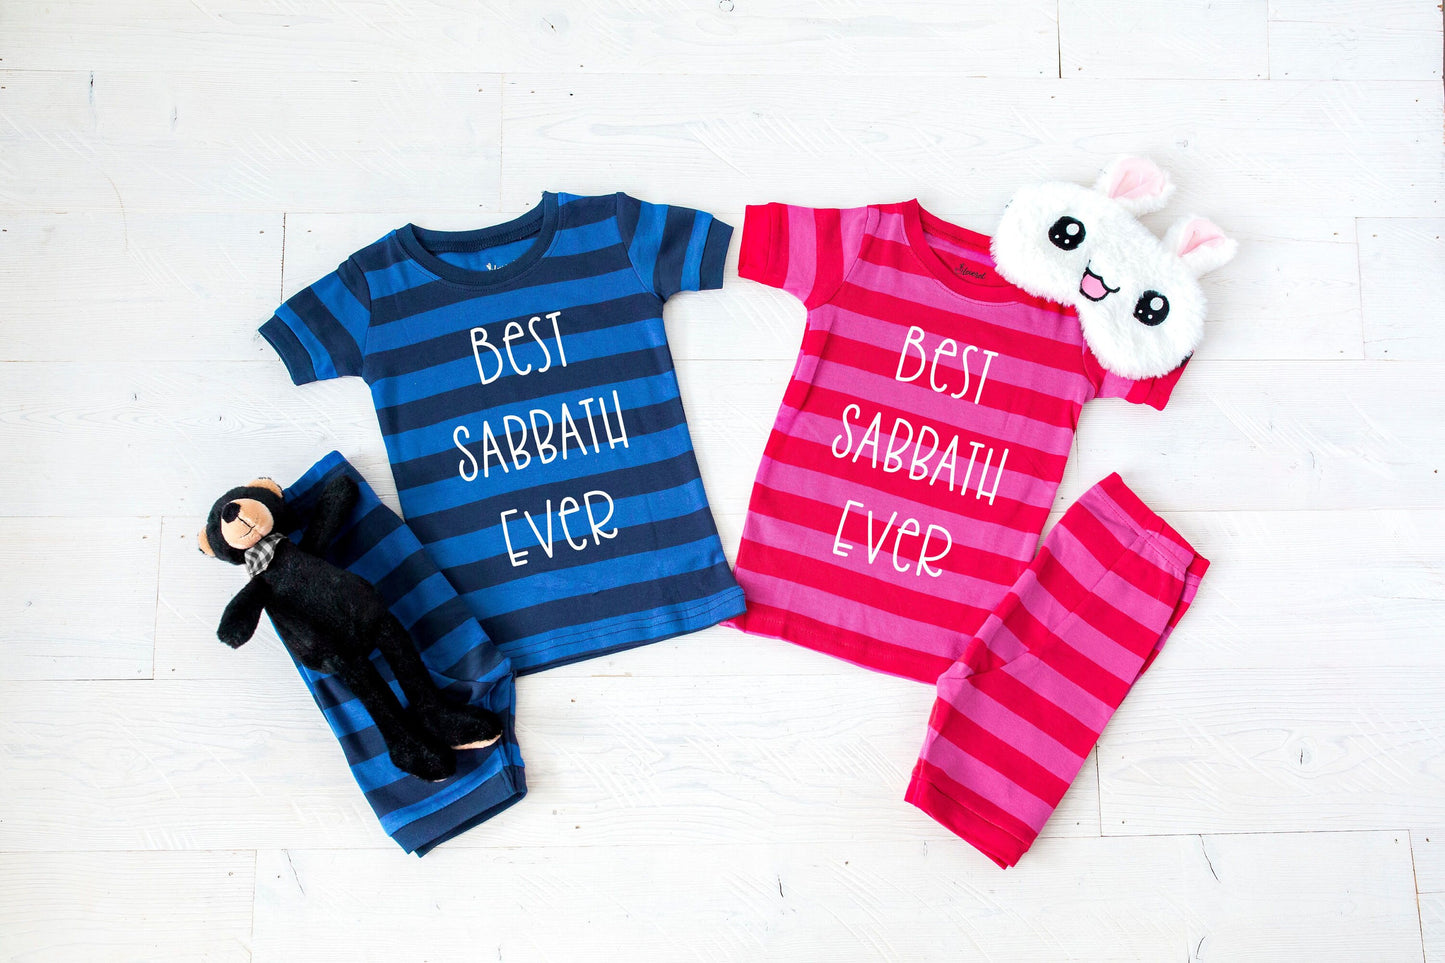 Best Sabbath Ever Striped Shorts Toddler and Youth Pajamas - Kids Pajamas - Sabbath Pajamas - Holiday Pajamas - Jewish Pajamas